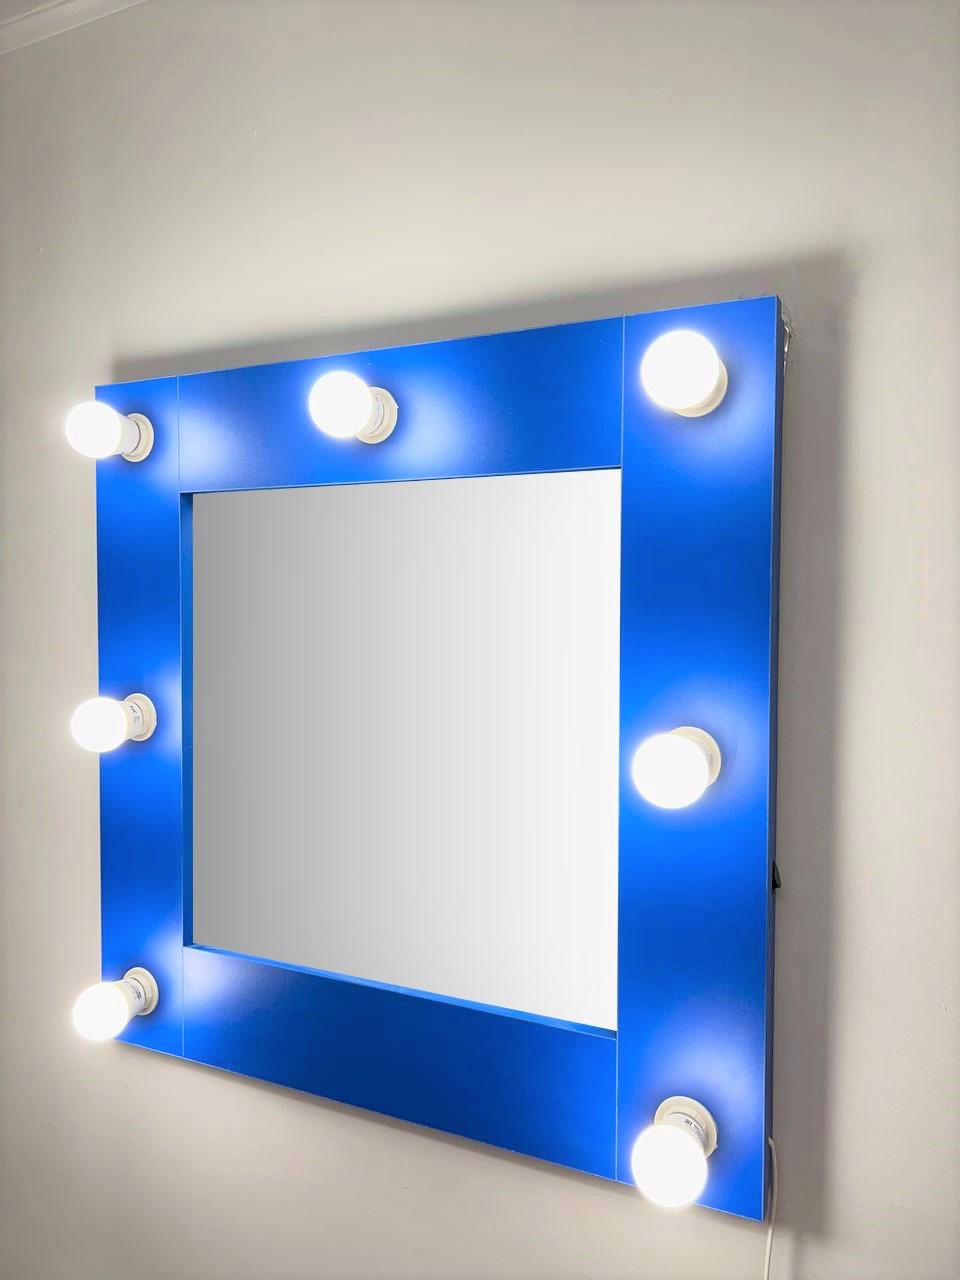 91053075 Гримерное зеркало с лампочками 60x60 см цвет синий STLM-0458985 BEAUTYUP